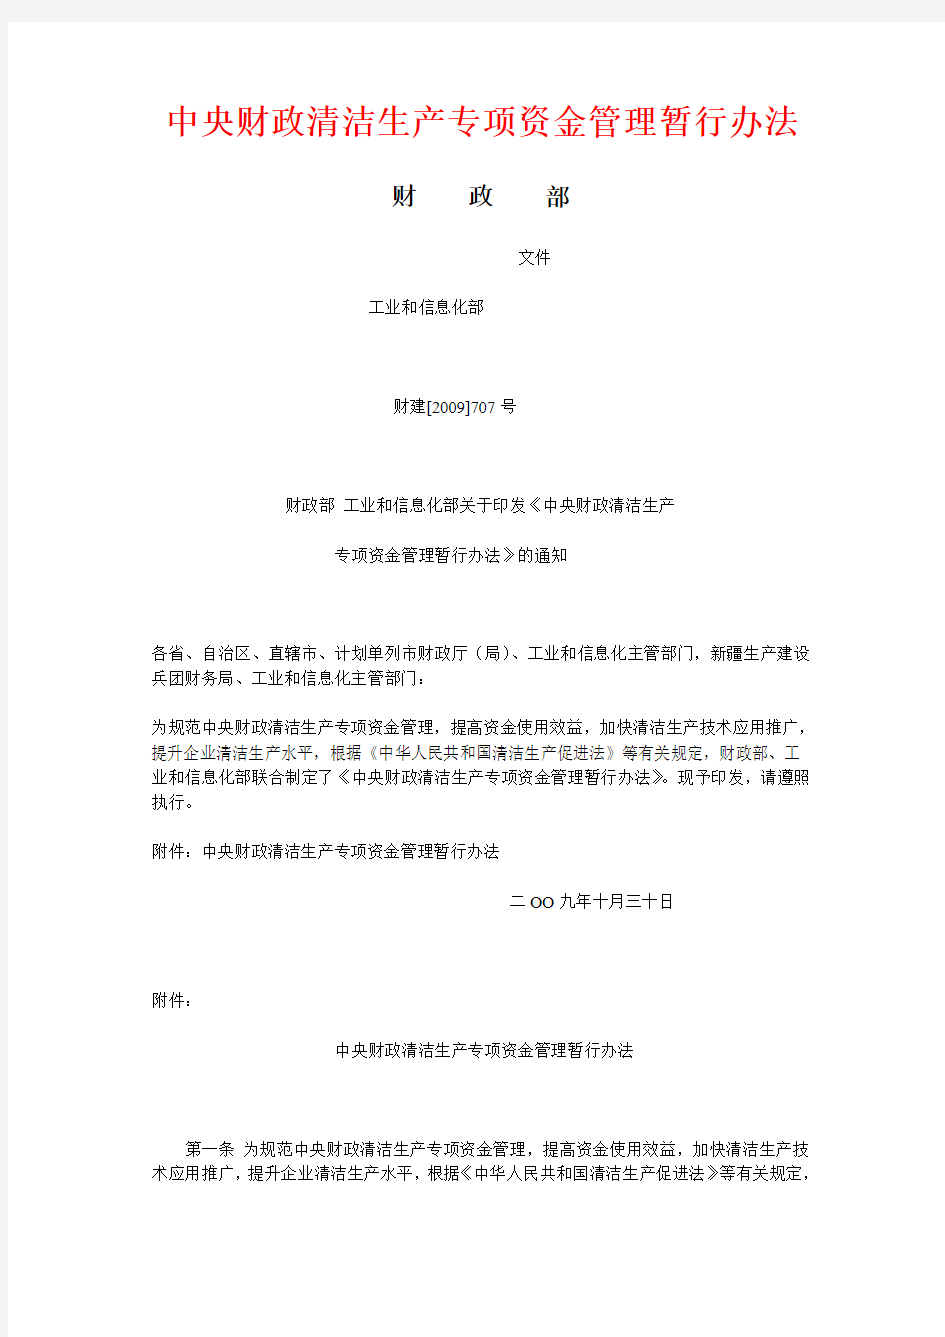 中央财政清洁生产专项资金管理暂行办法【2009】707号文件